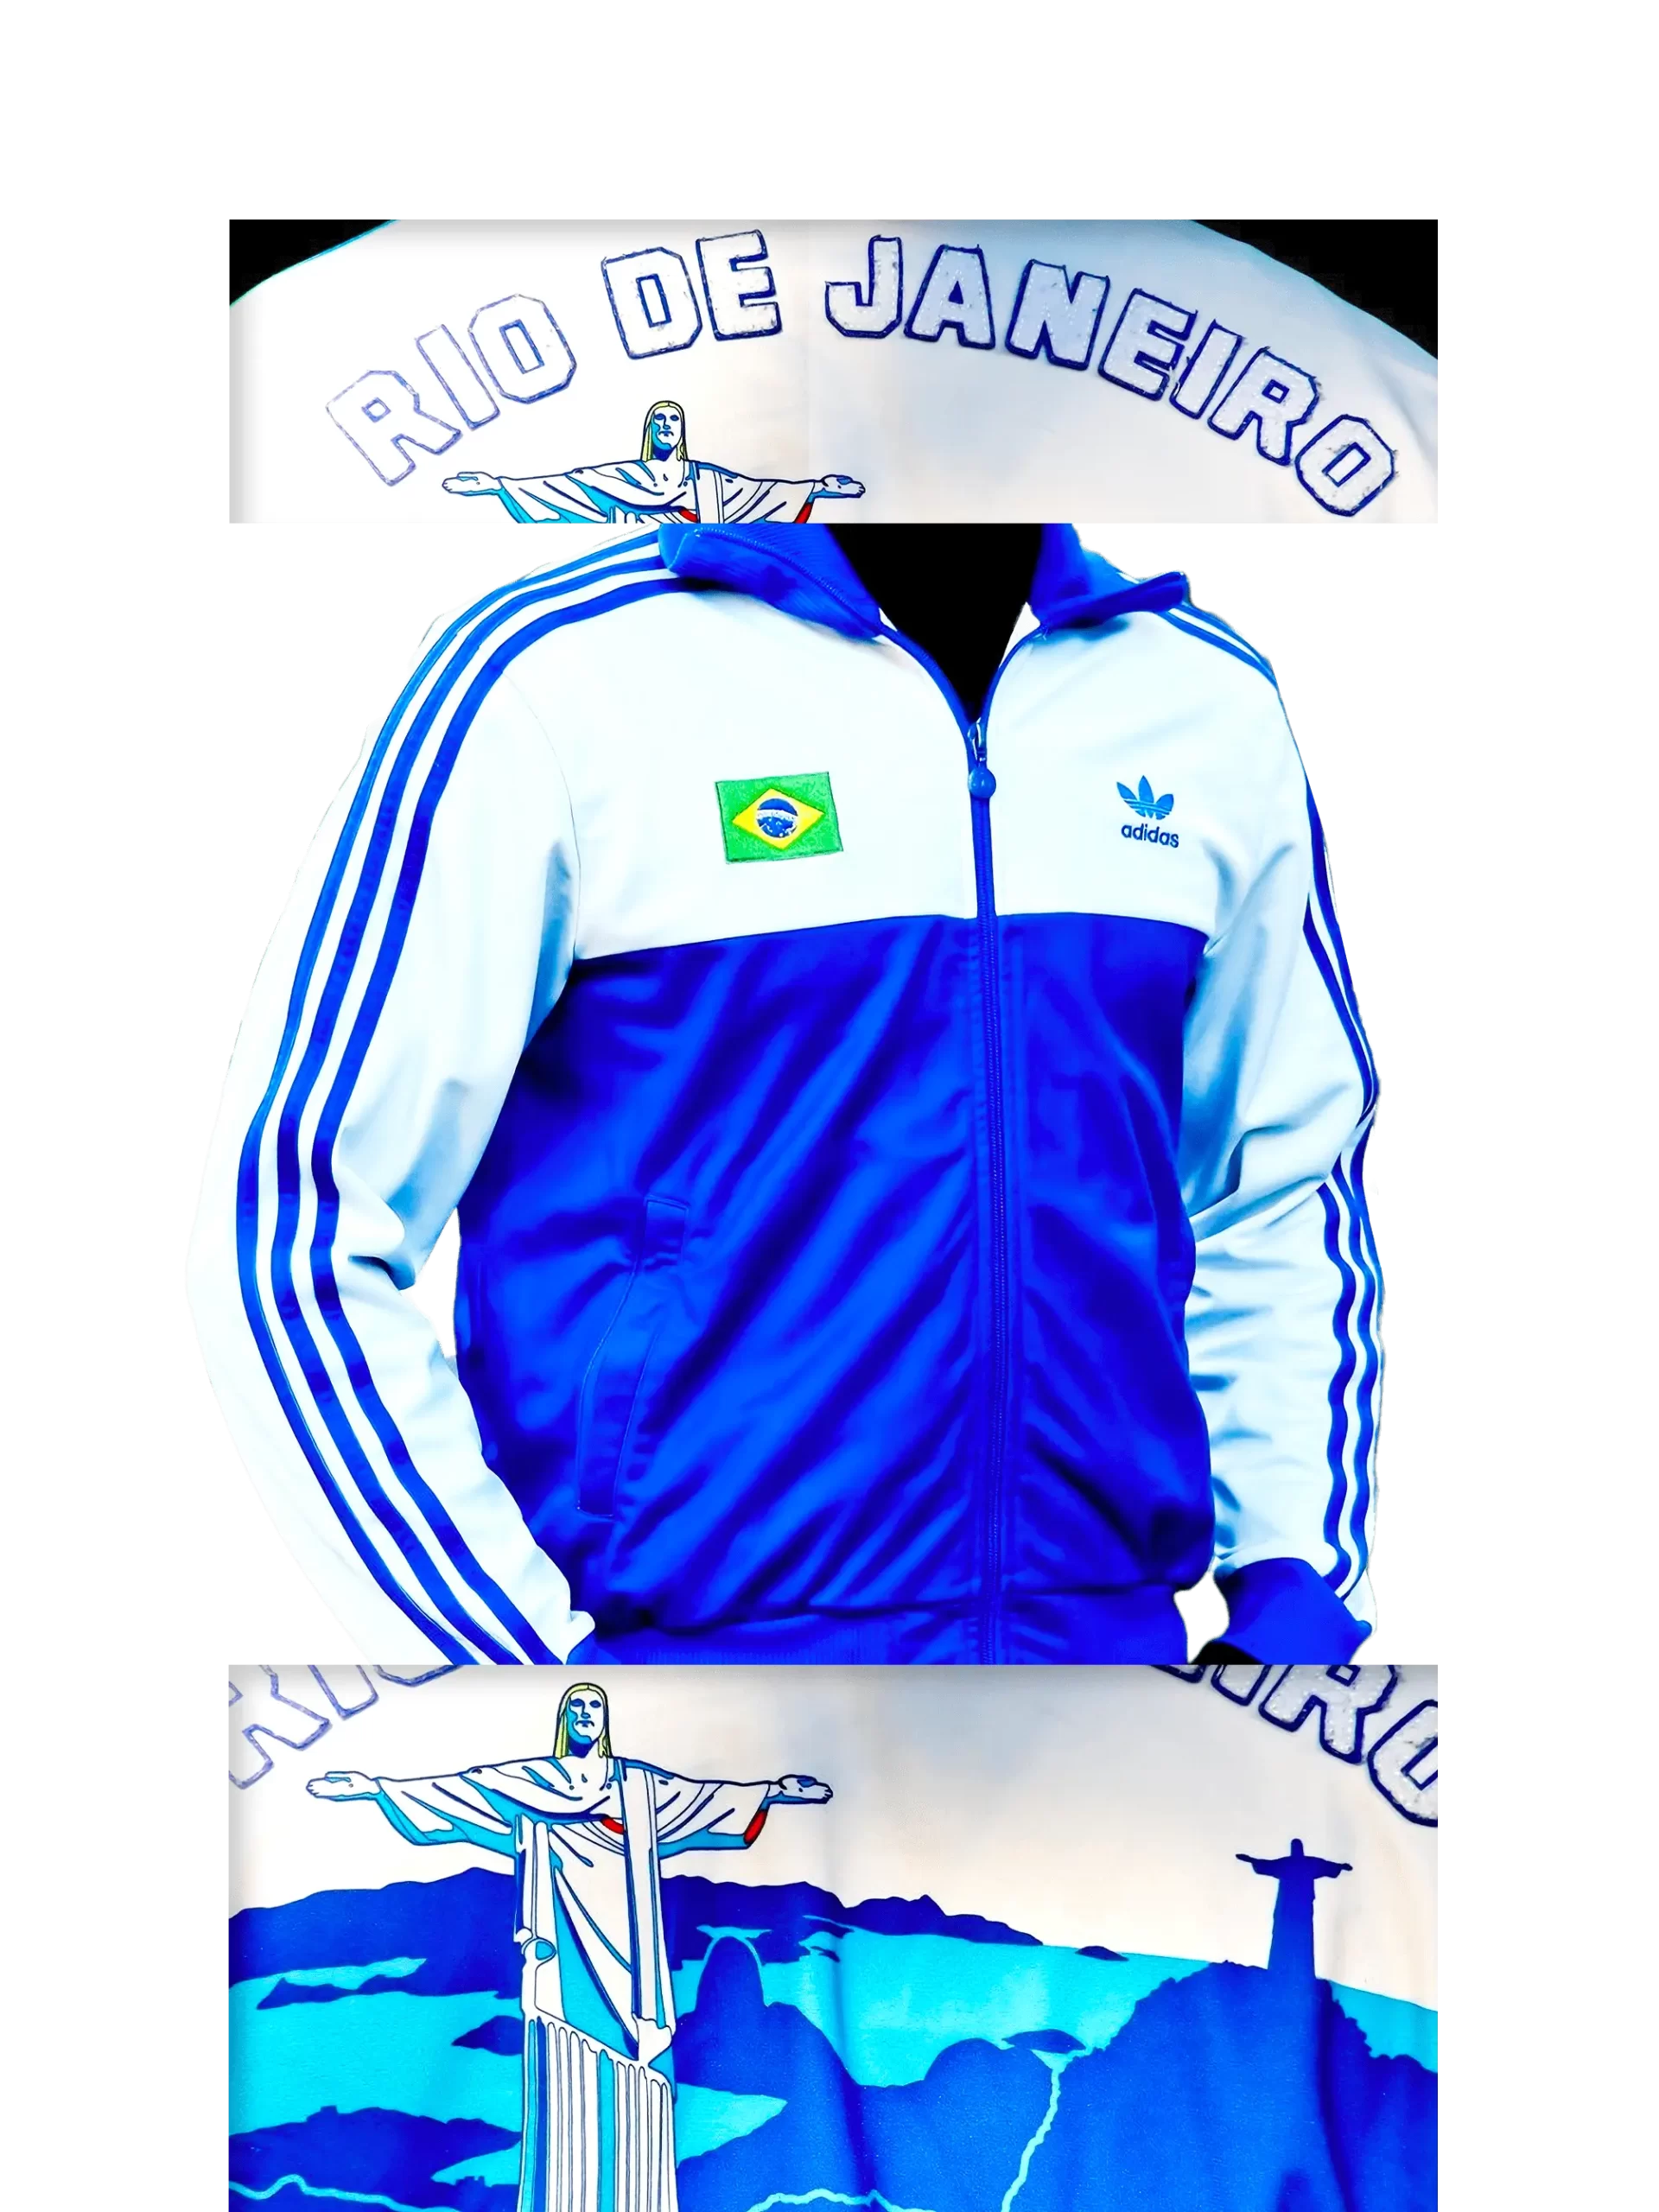 Men's 2006 Rio de Janeiro TT 1 by Adidas Originals: Carefree (EnLawded.com file #lmchk71708ip2y124137kg9st)